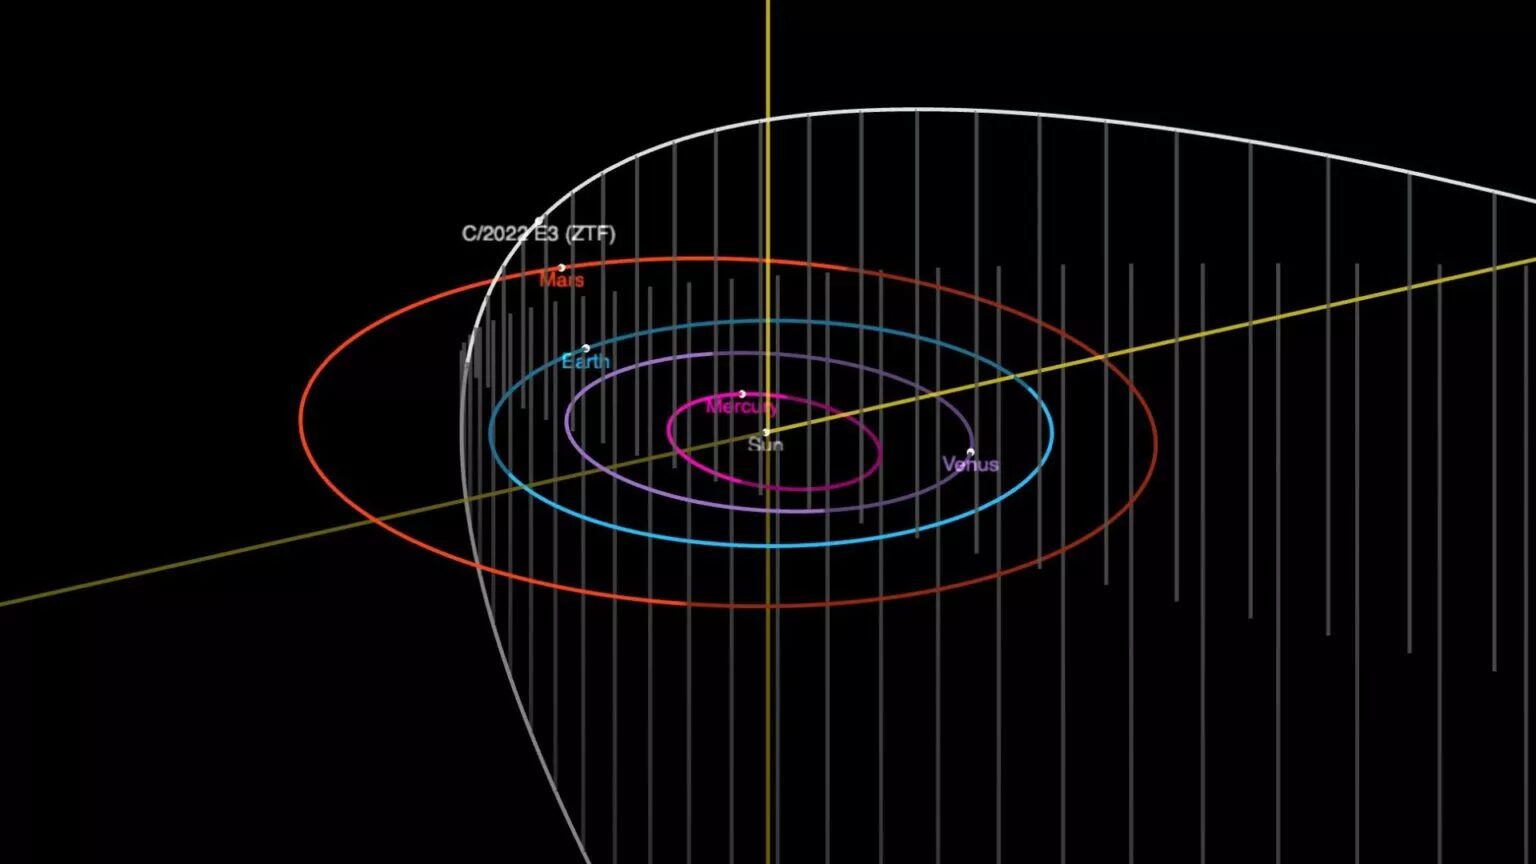 trajectoire de la comète c/2022 e3 ztf